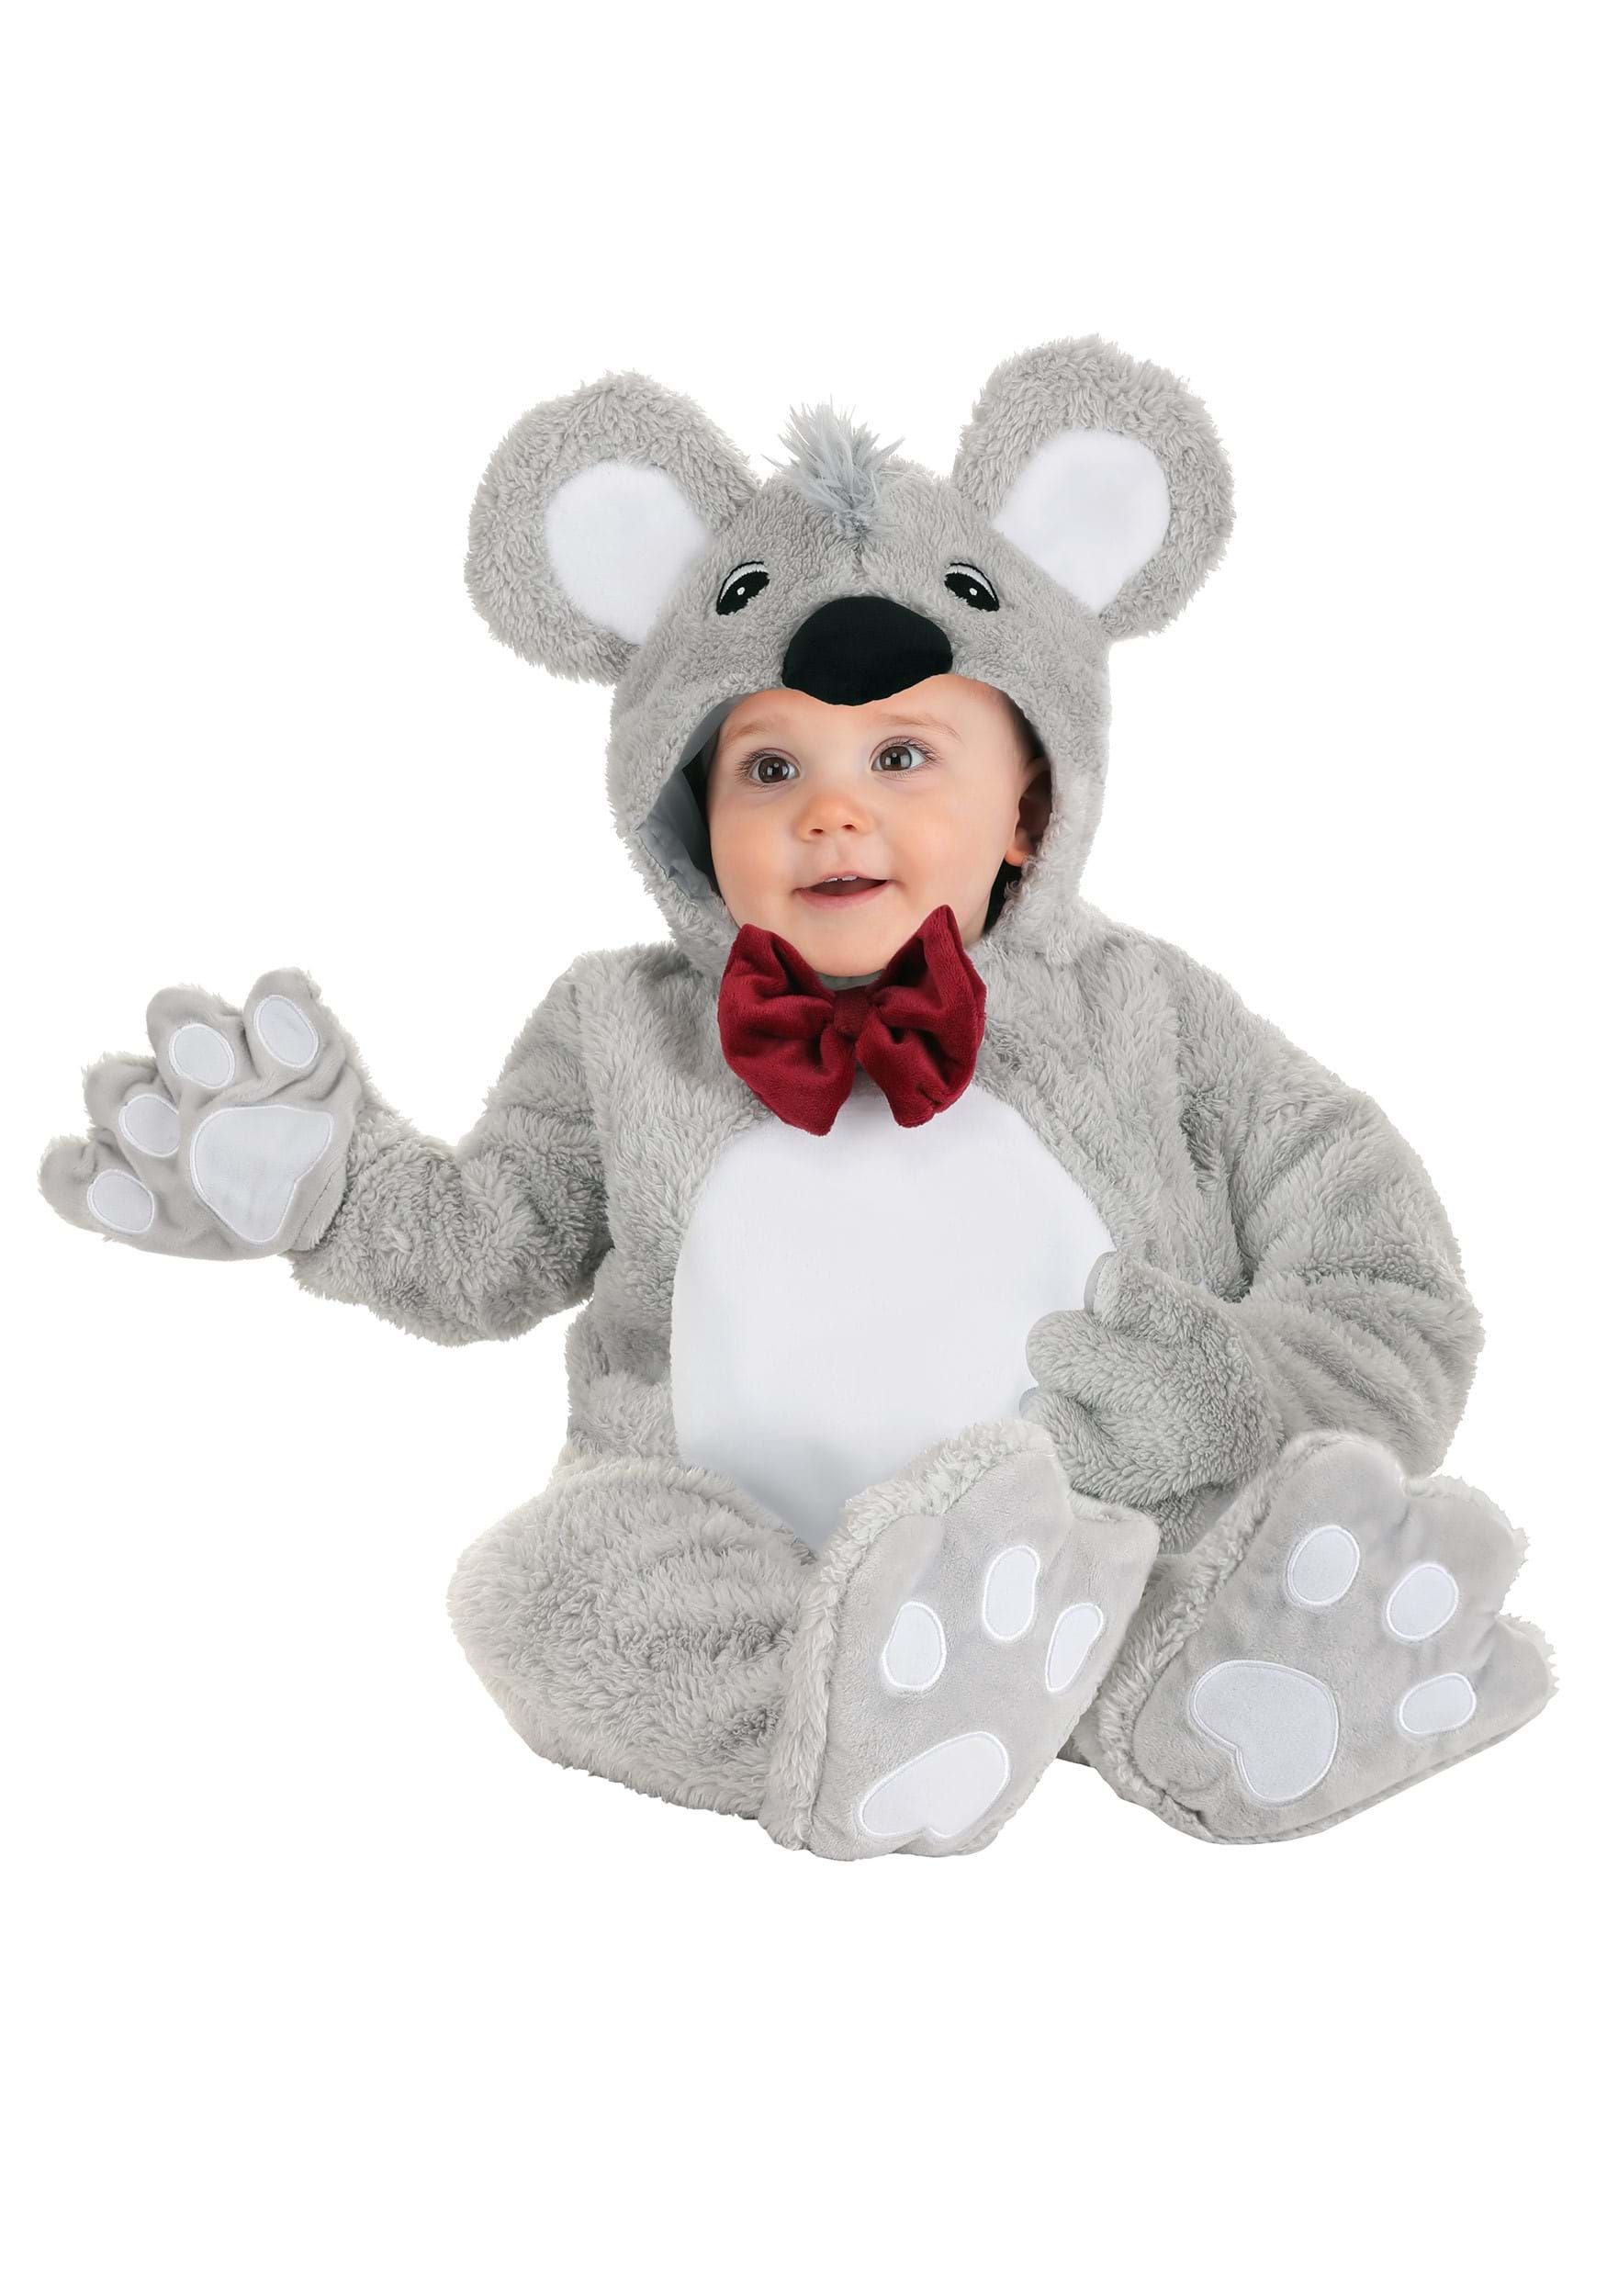 Dapper Koala Costume for Infants